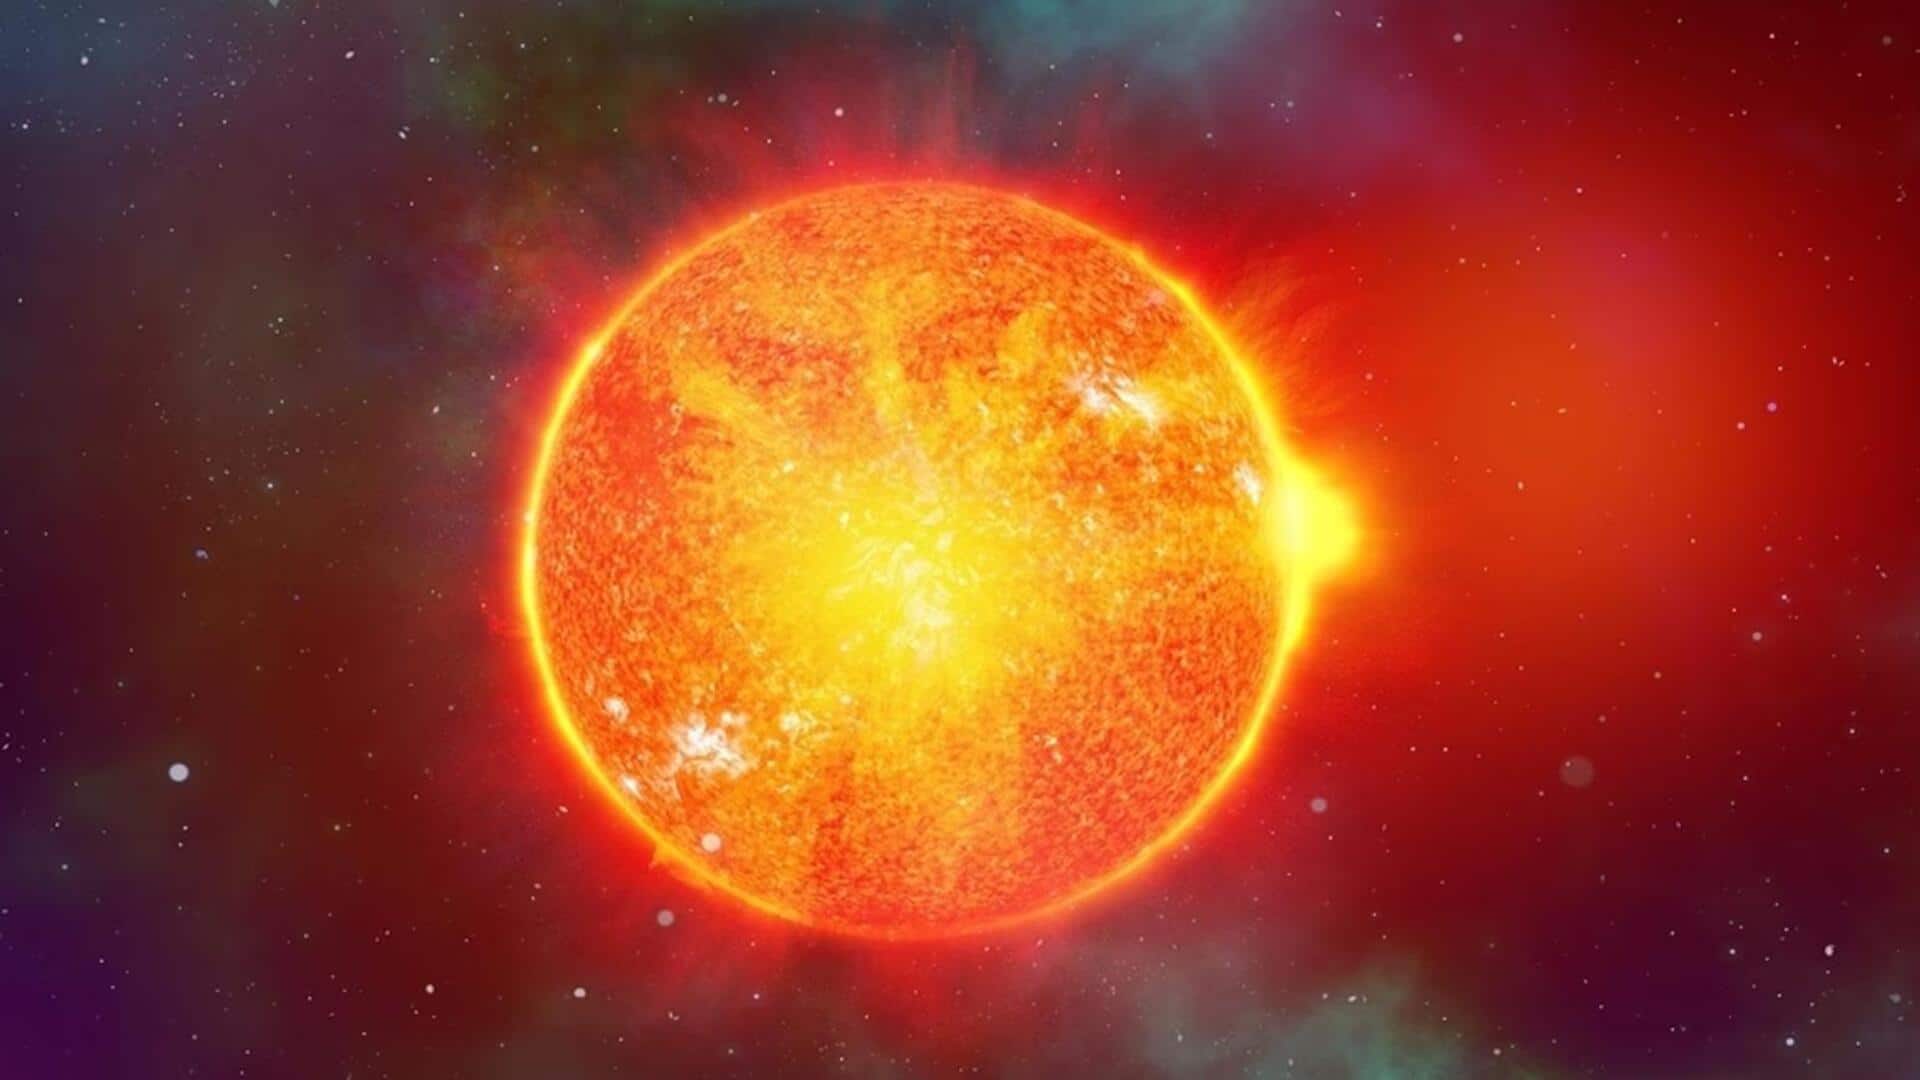 नासा ने छल्ले के आकार के सनस्पॉट का लगाया पता, सौर तूफान आने की संभावना बढ़ी